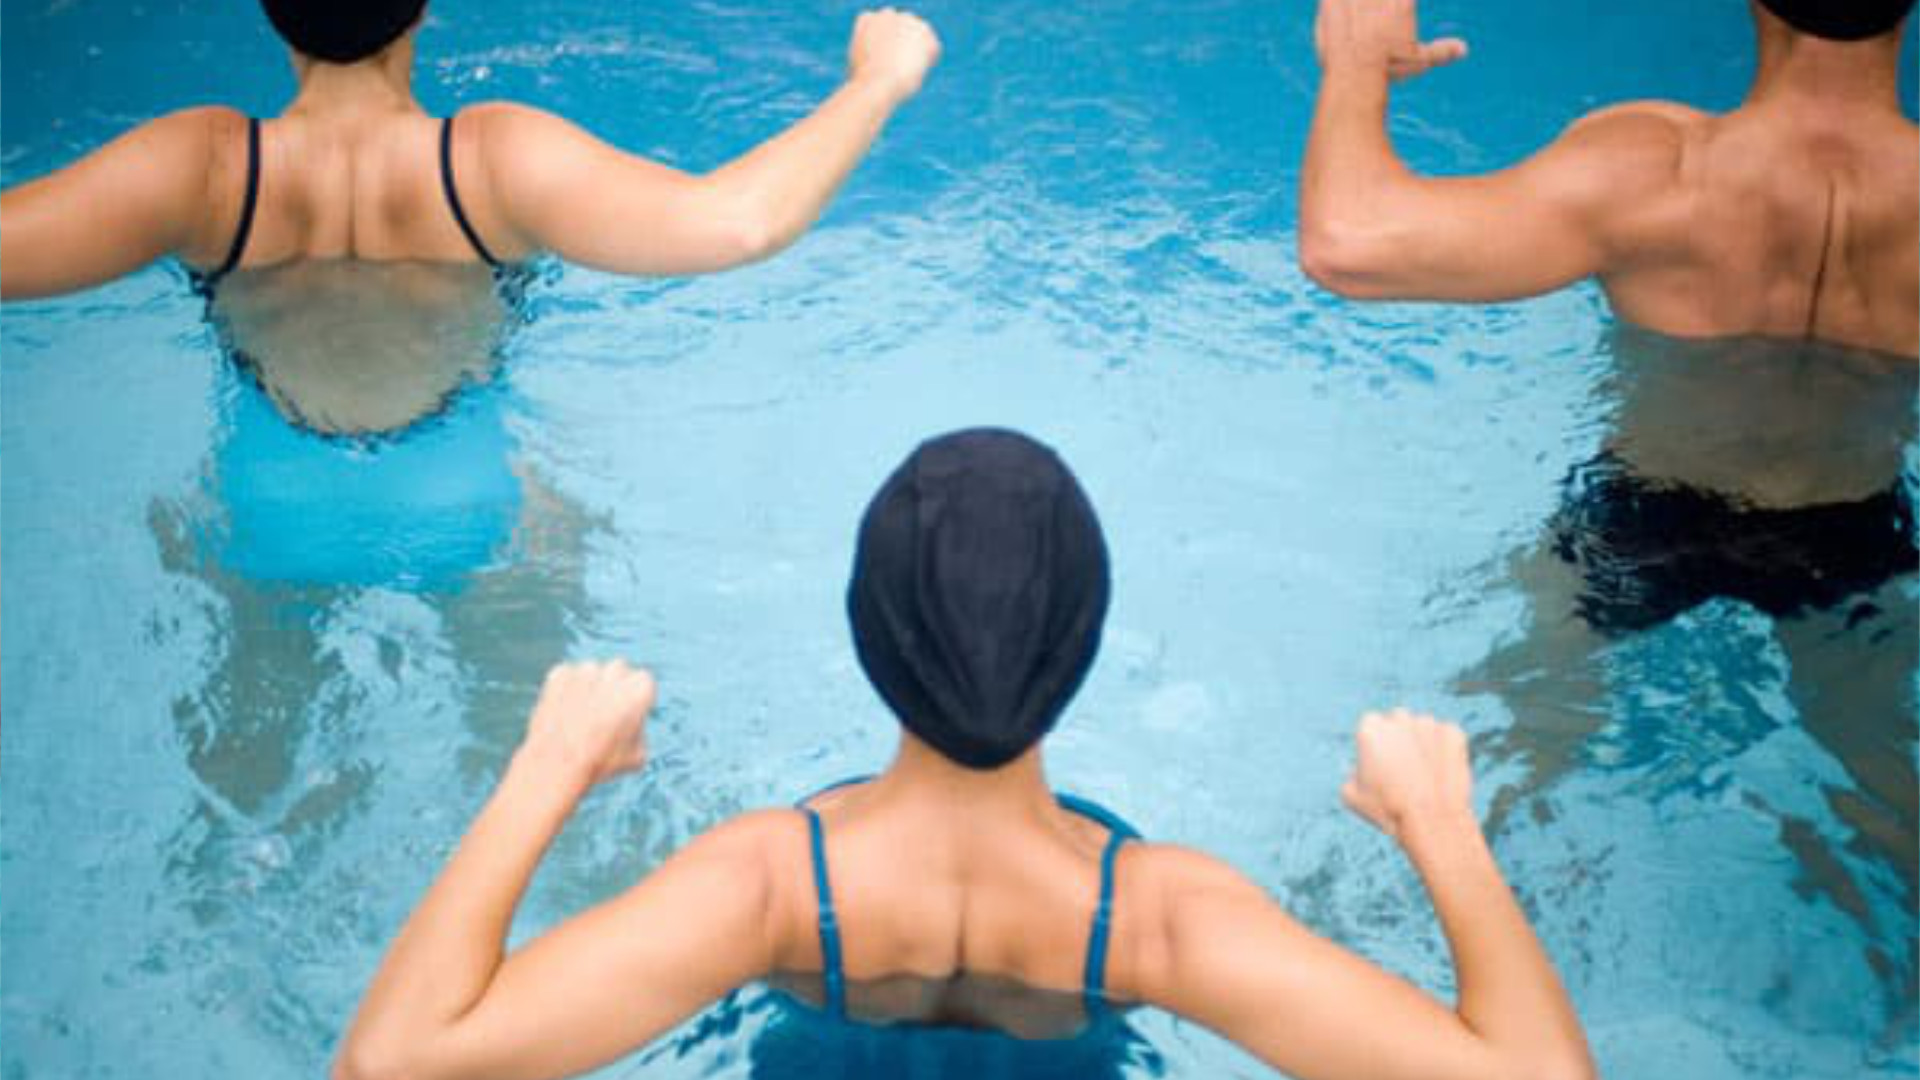 Personnes participant à un cours d'aquafitness dans une piscine